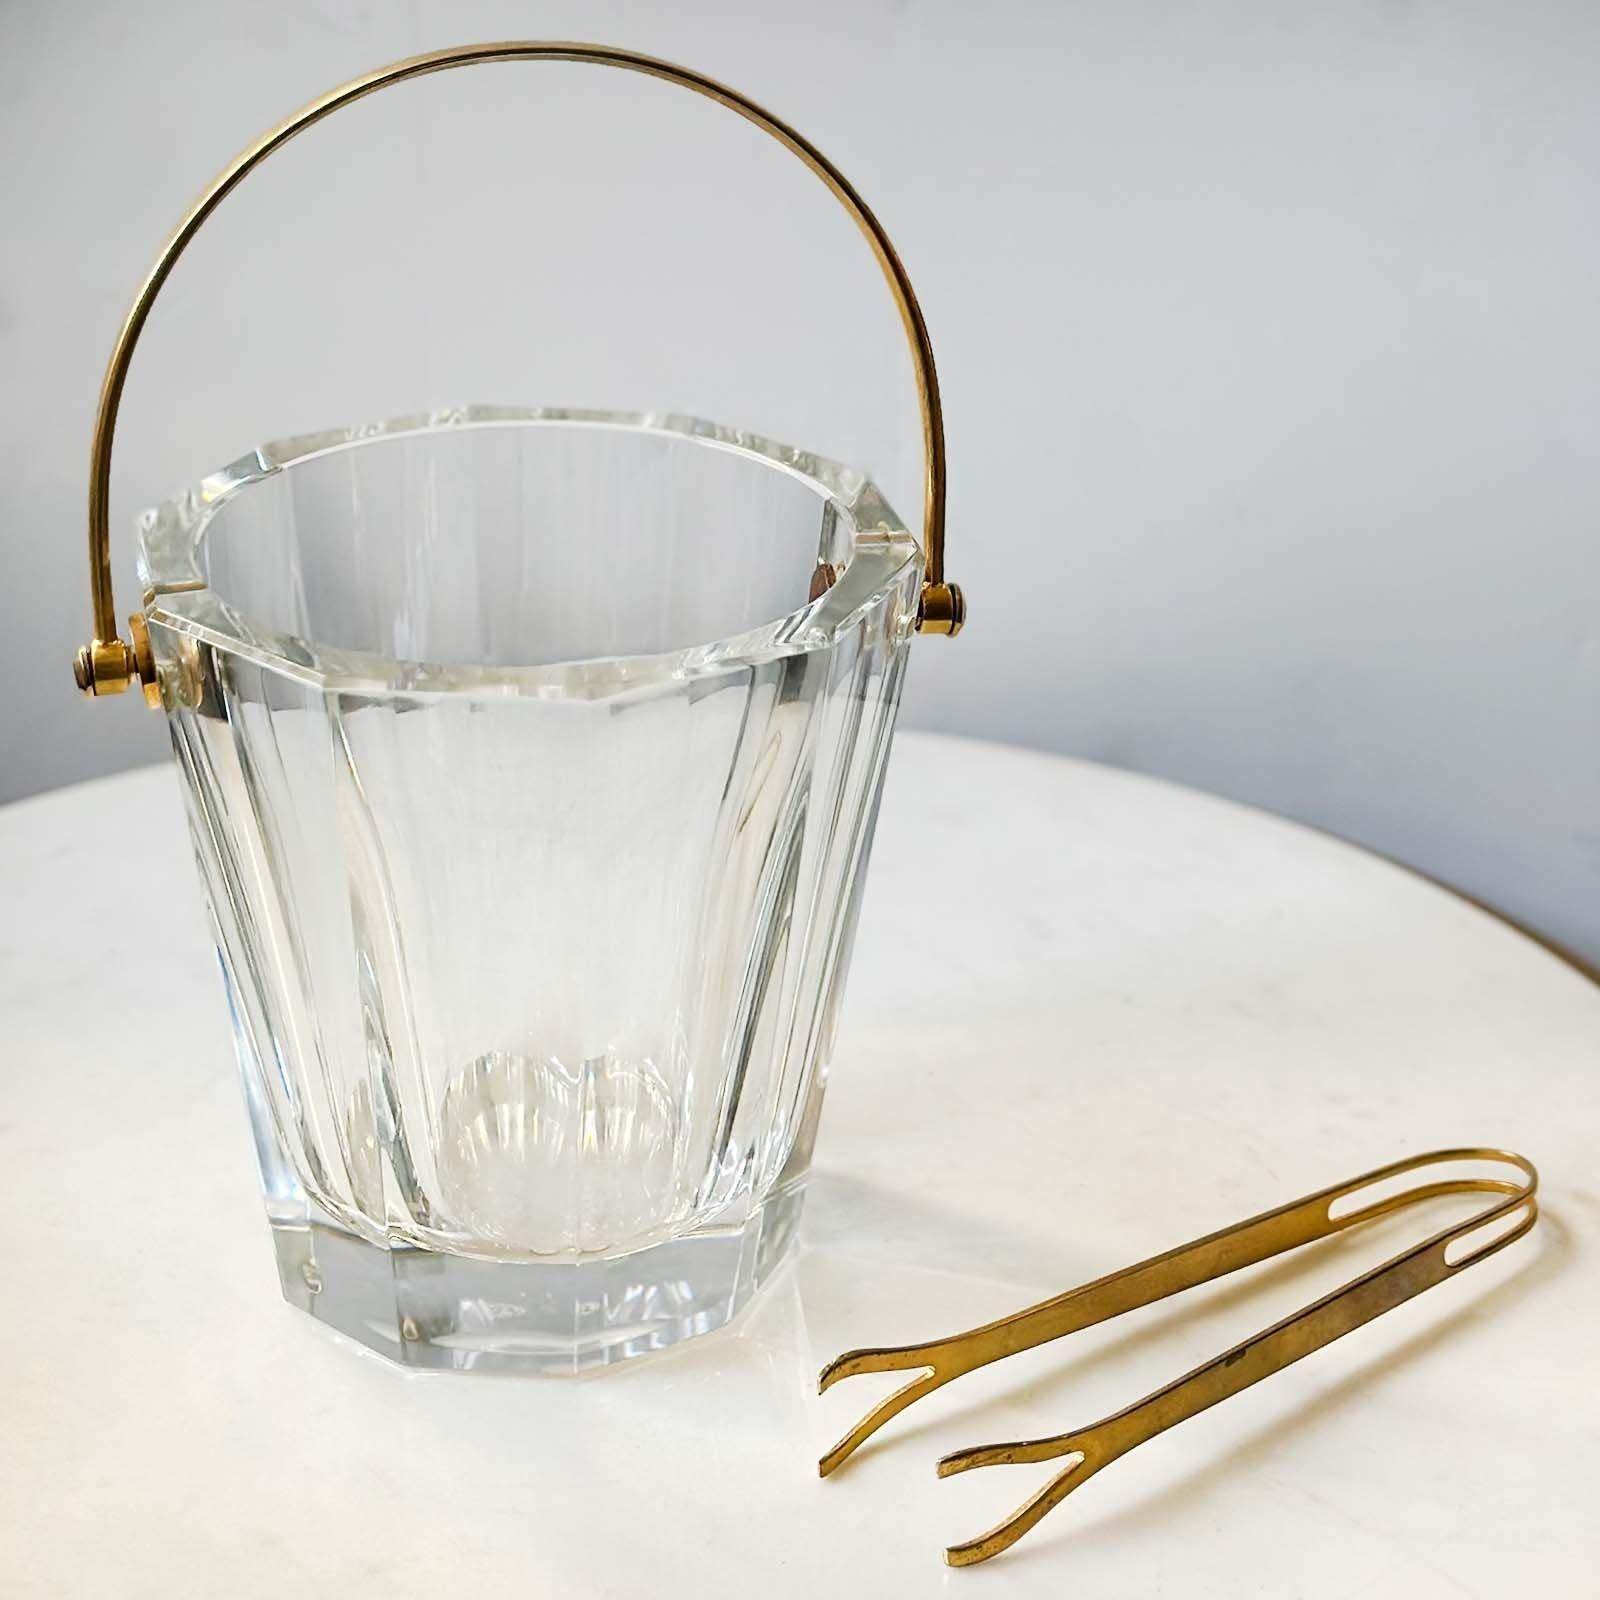 Elegant seau à glace en cristal taillé et poignée en métal doré de Baccarat, France ; suivi d'une pince à glace assortie. Fabriqué au 20e siècle. La marque du fabricant est gravée sur la base de la pièce.
Dimensions :
9,5 